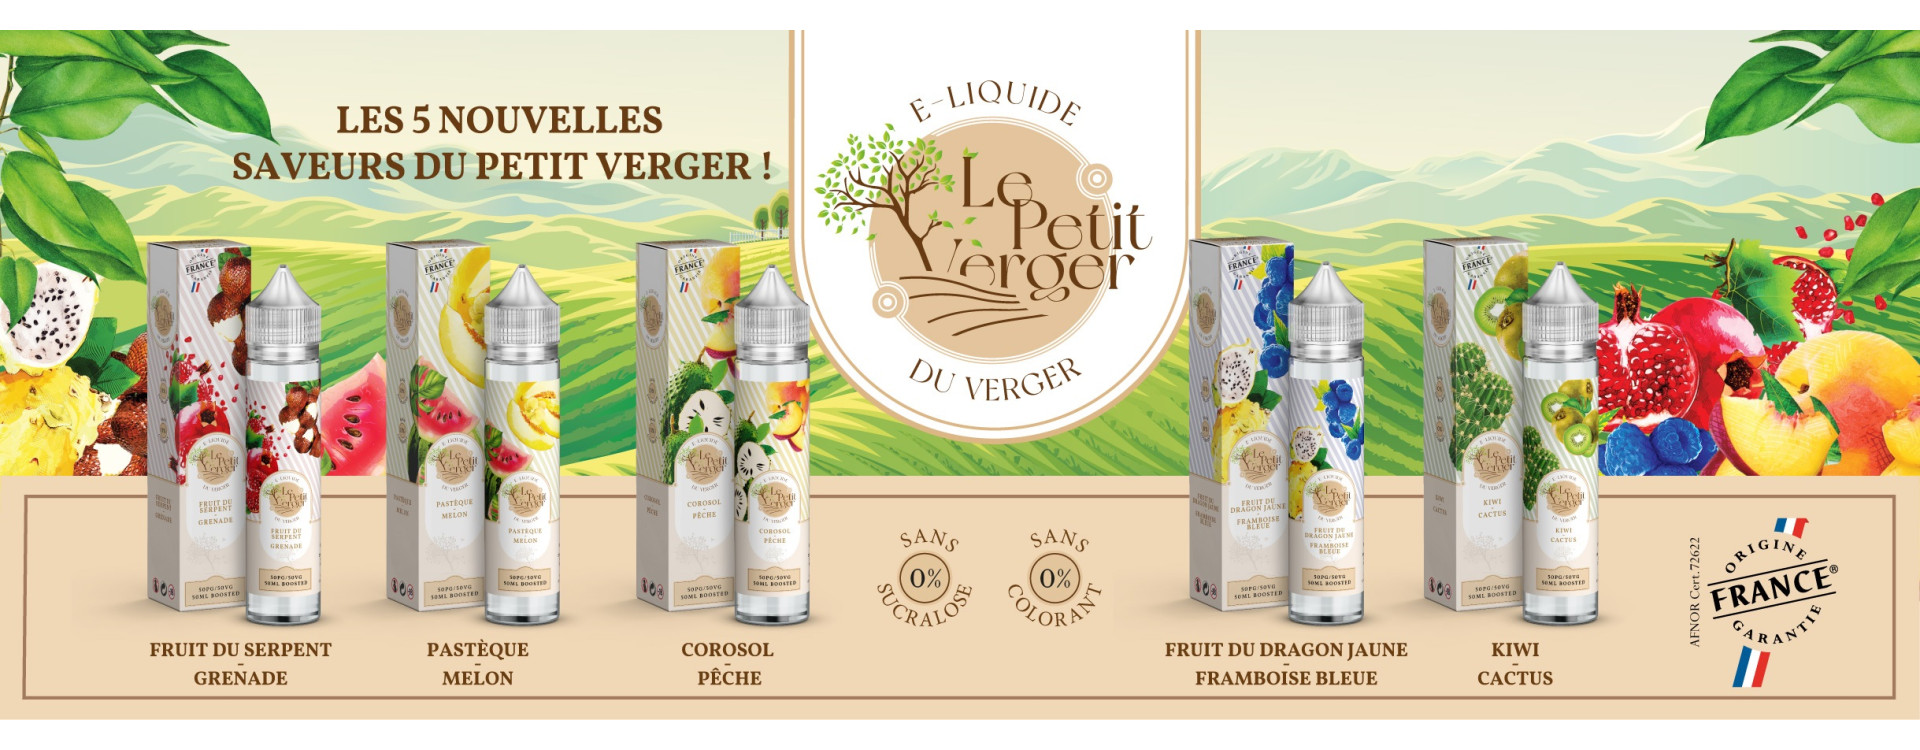 Les arômes concentrés Le Petit Verger pour un DIY E-liquide fruité et unique